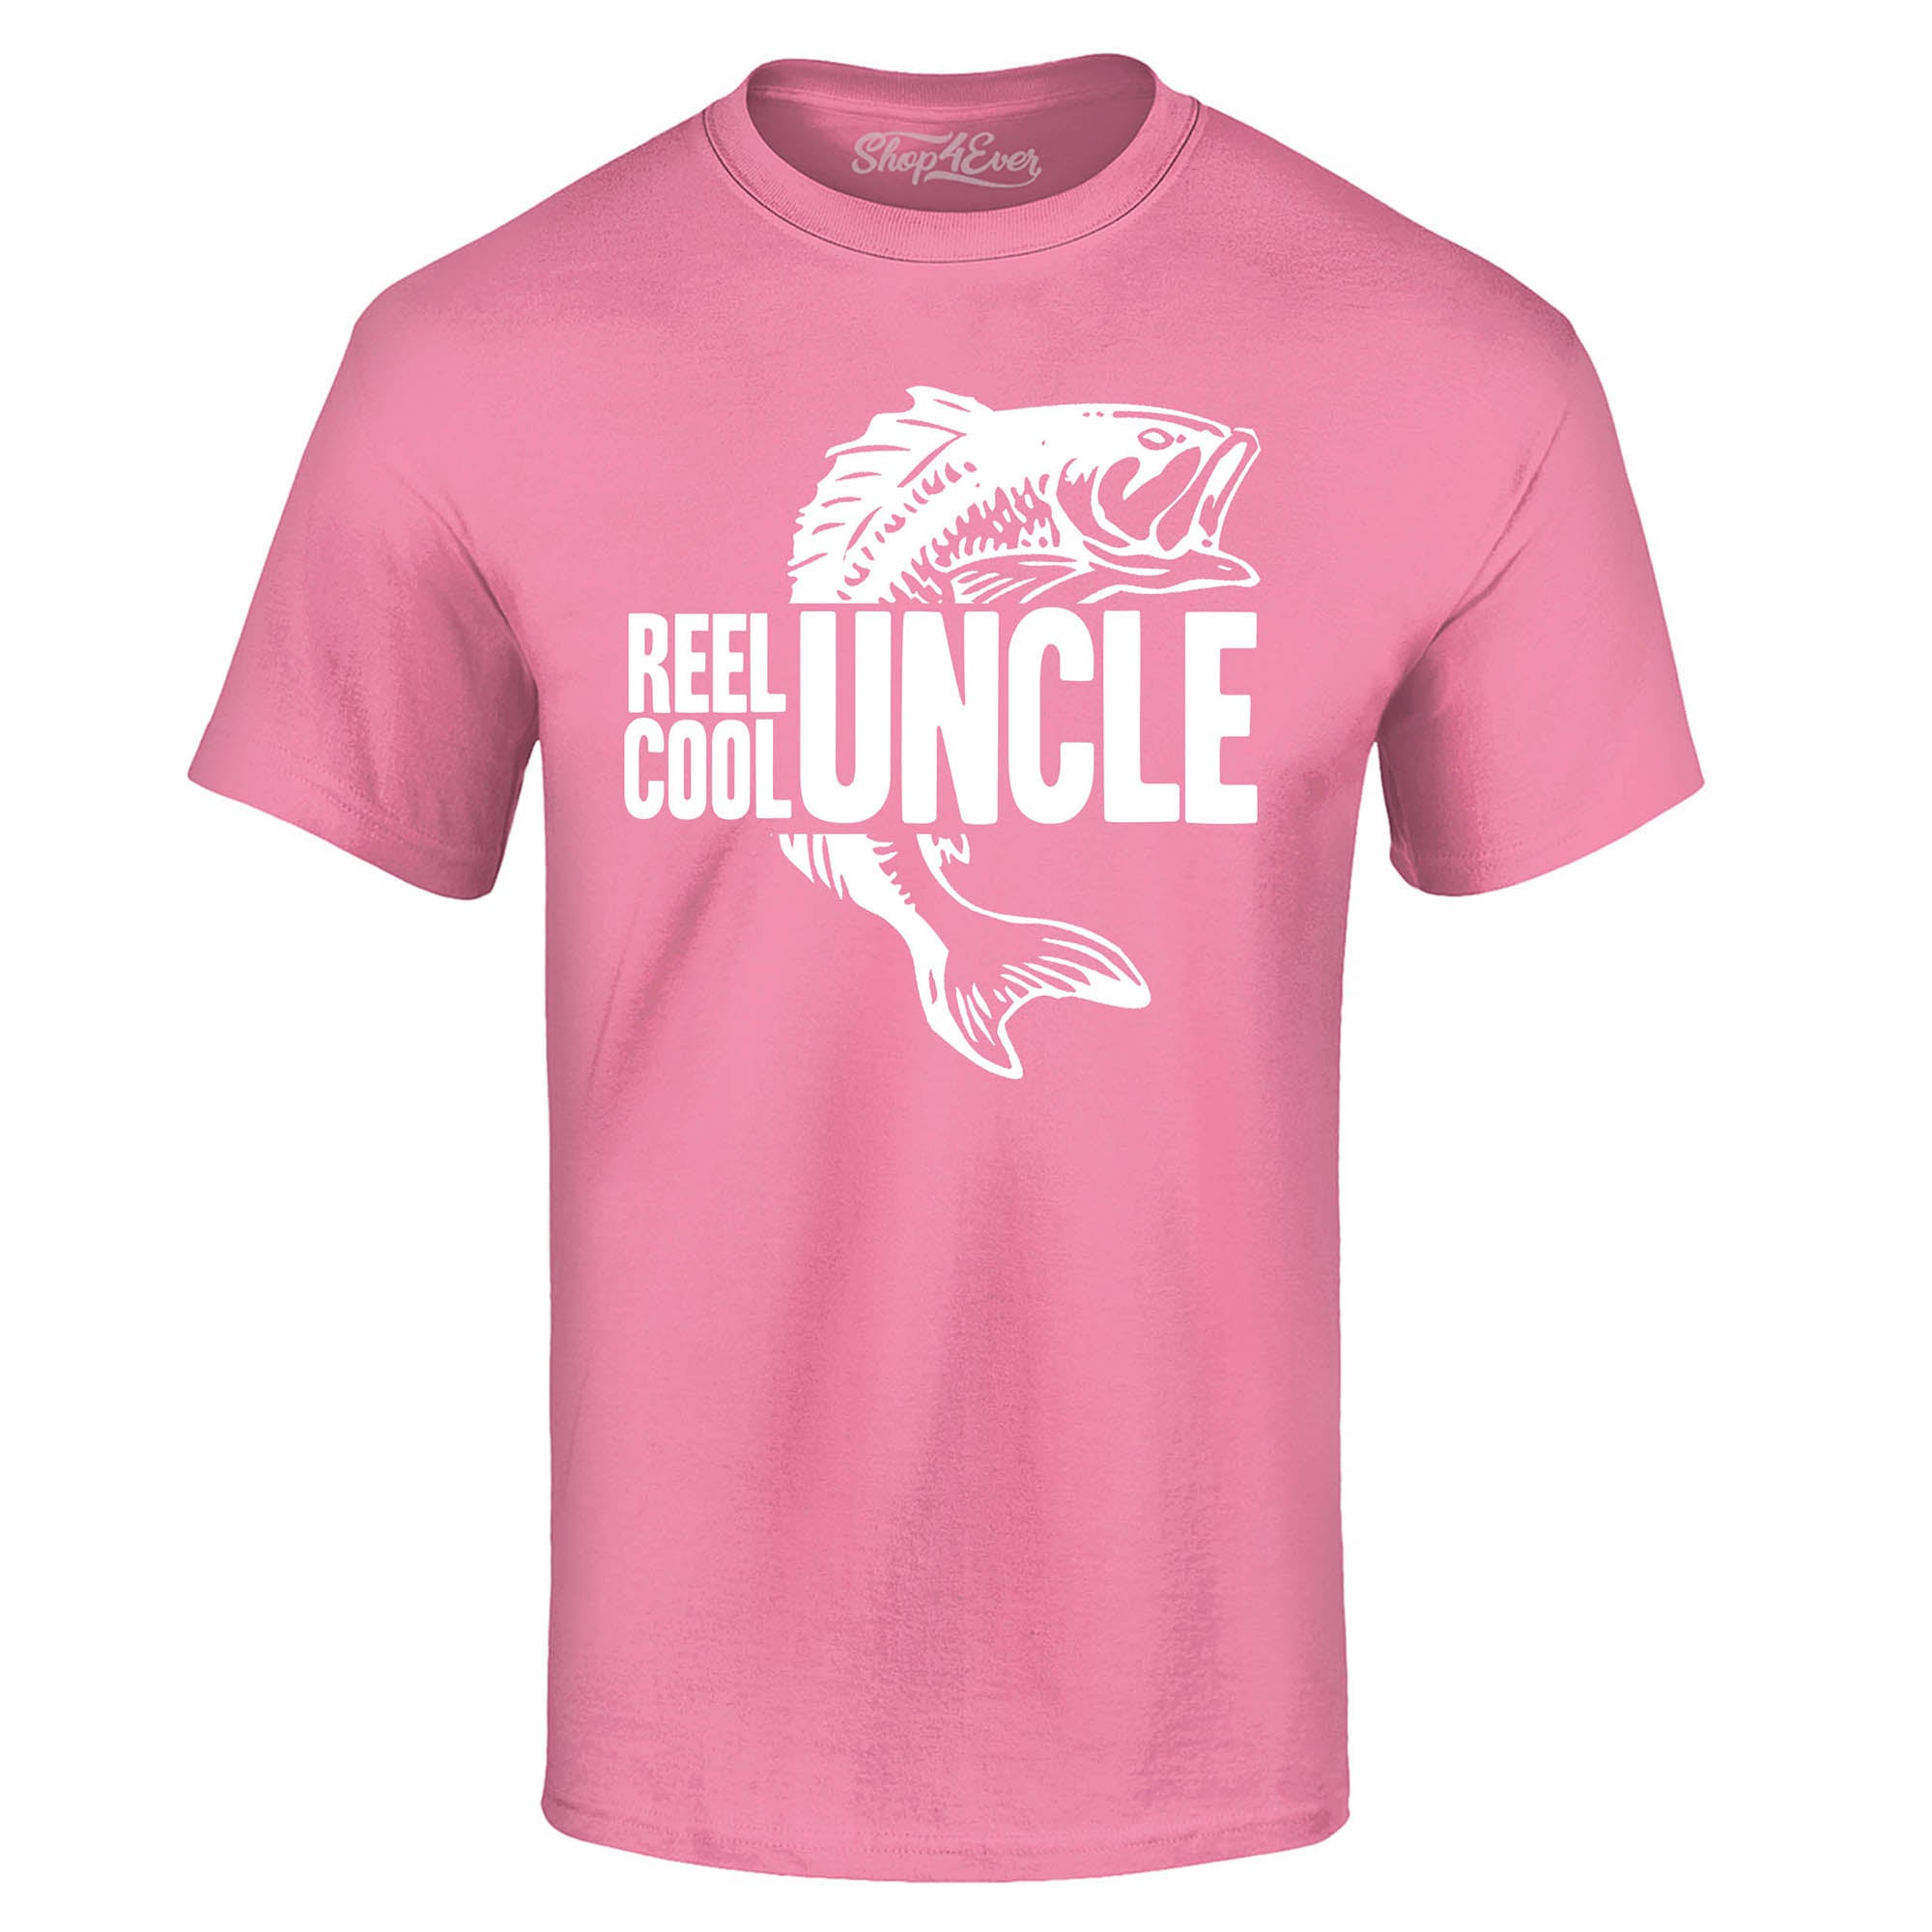 Reel Cool Uncle Fishing Lake T-Shirt